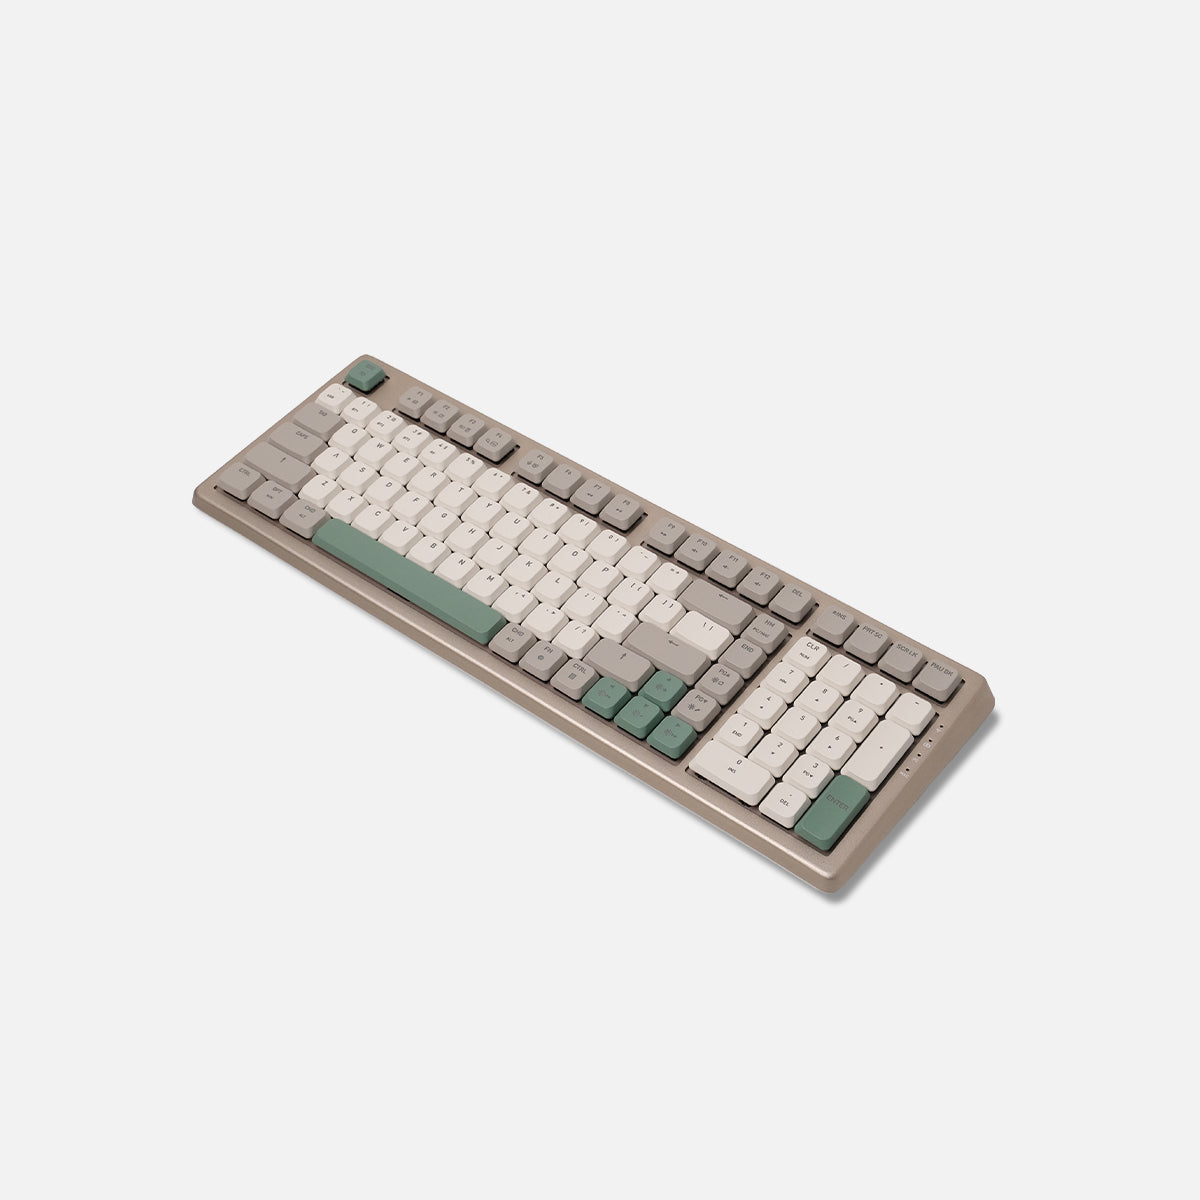 لوحة مفاتيح Cascade لاسلكية رفيعة بنسبة 98% وقابلة للتبديل السريع